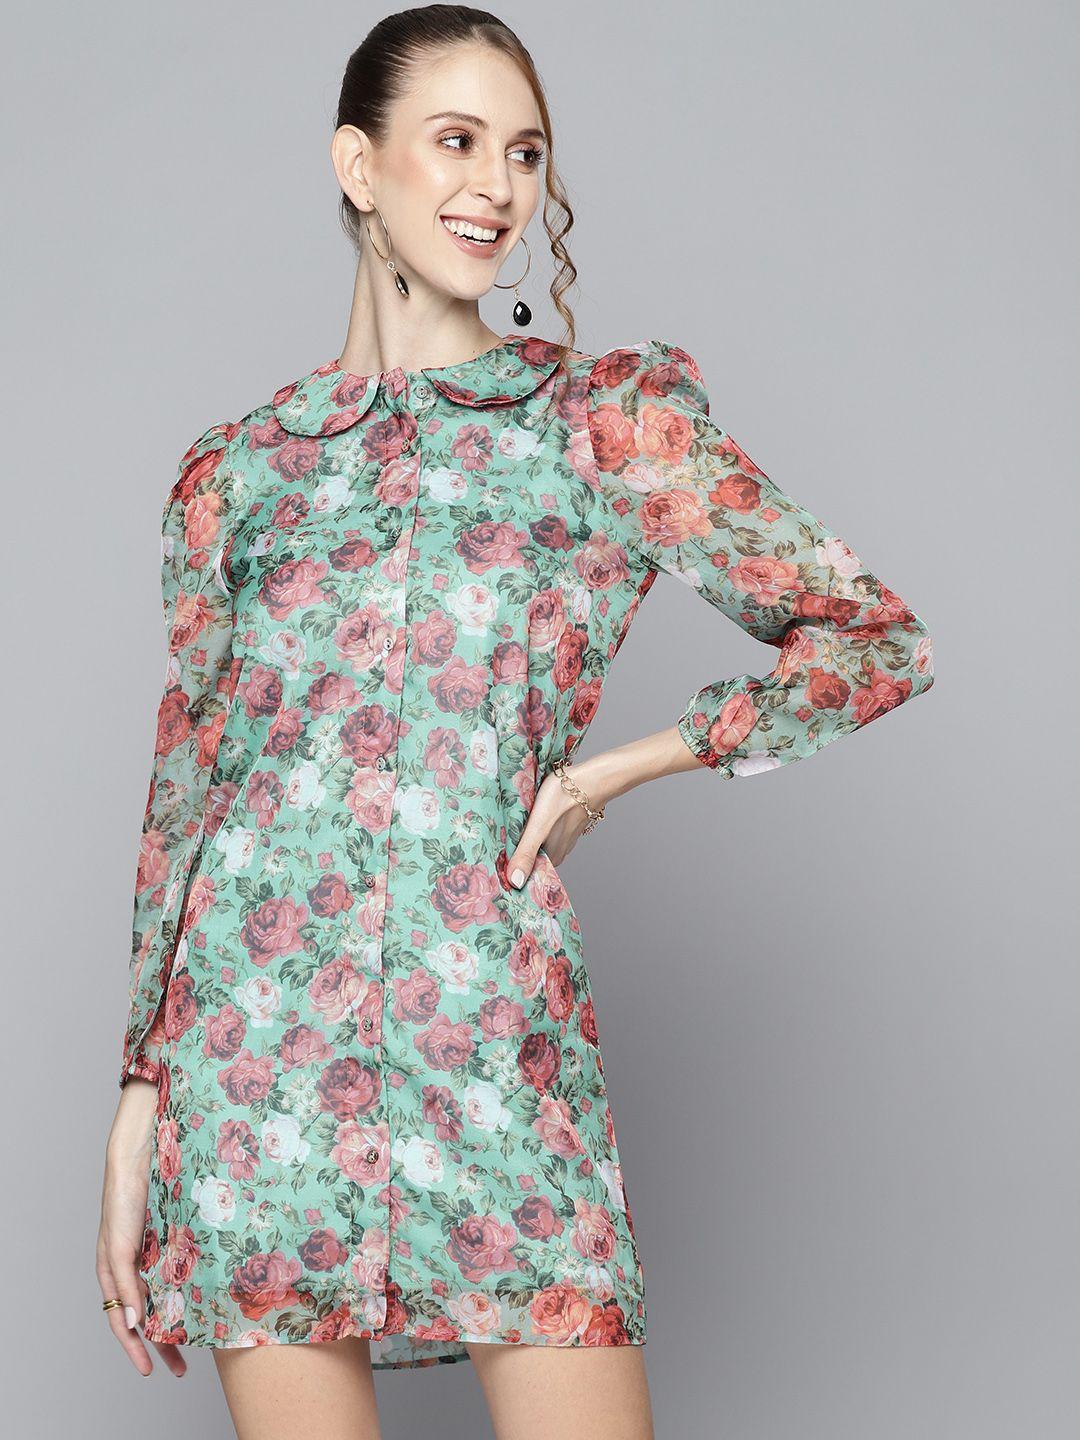 sassafras women green & white floral peter pan collar shirt dress